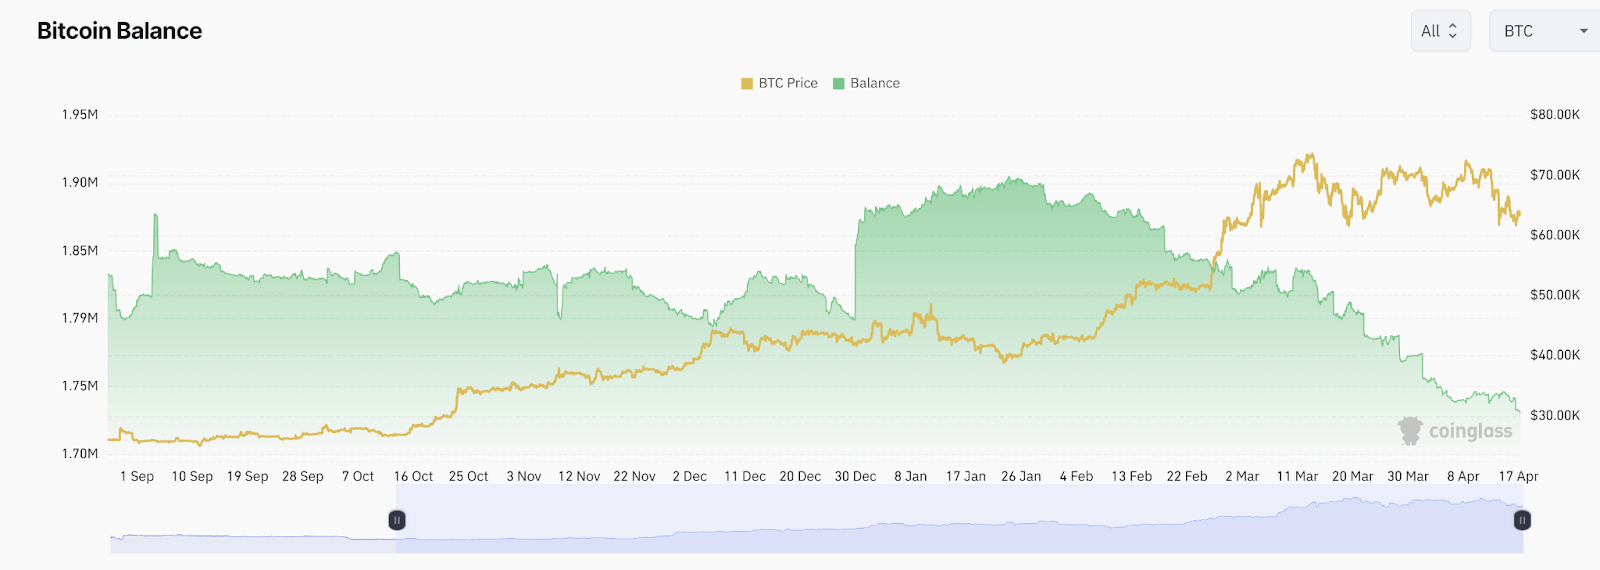 Bitcoin Price vs Bitcoin Balance on Exchanges Via Coinglass